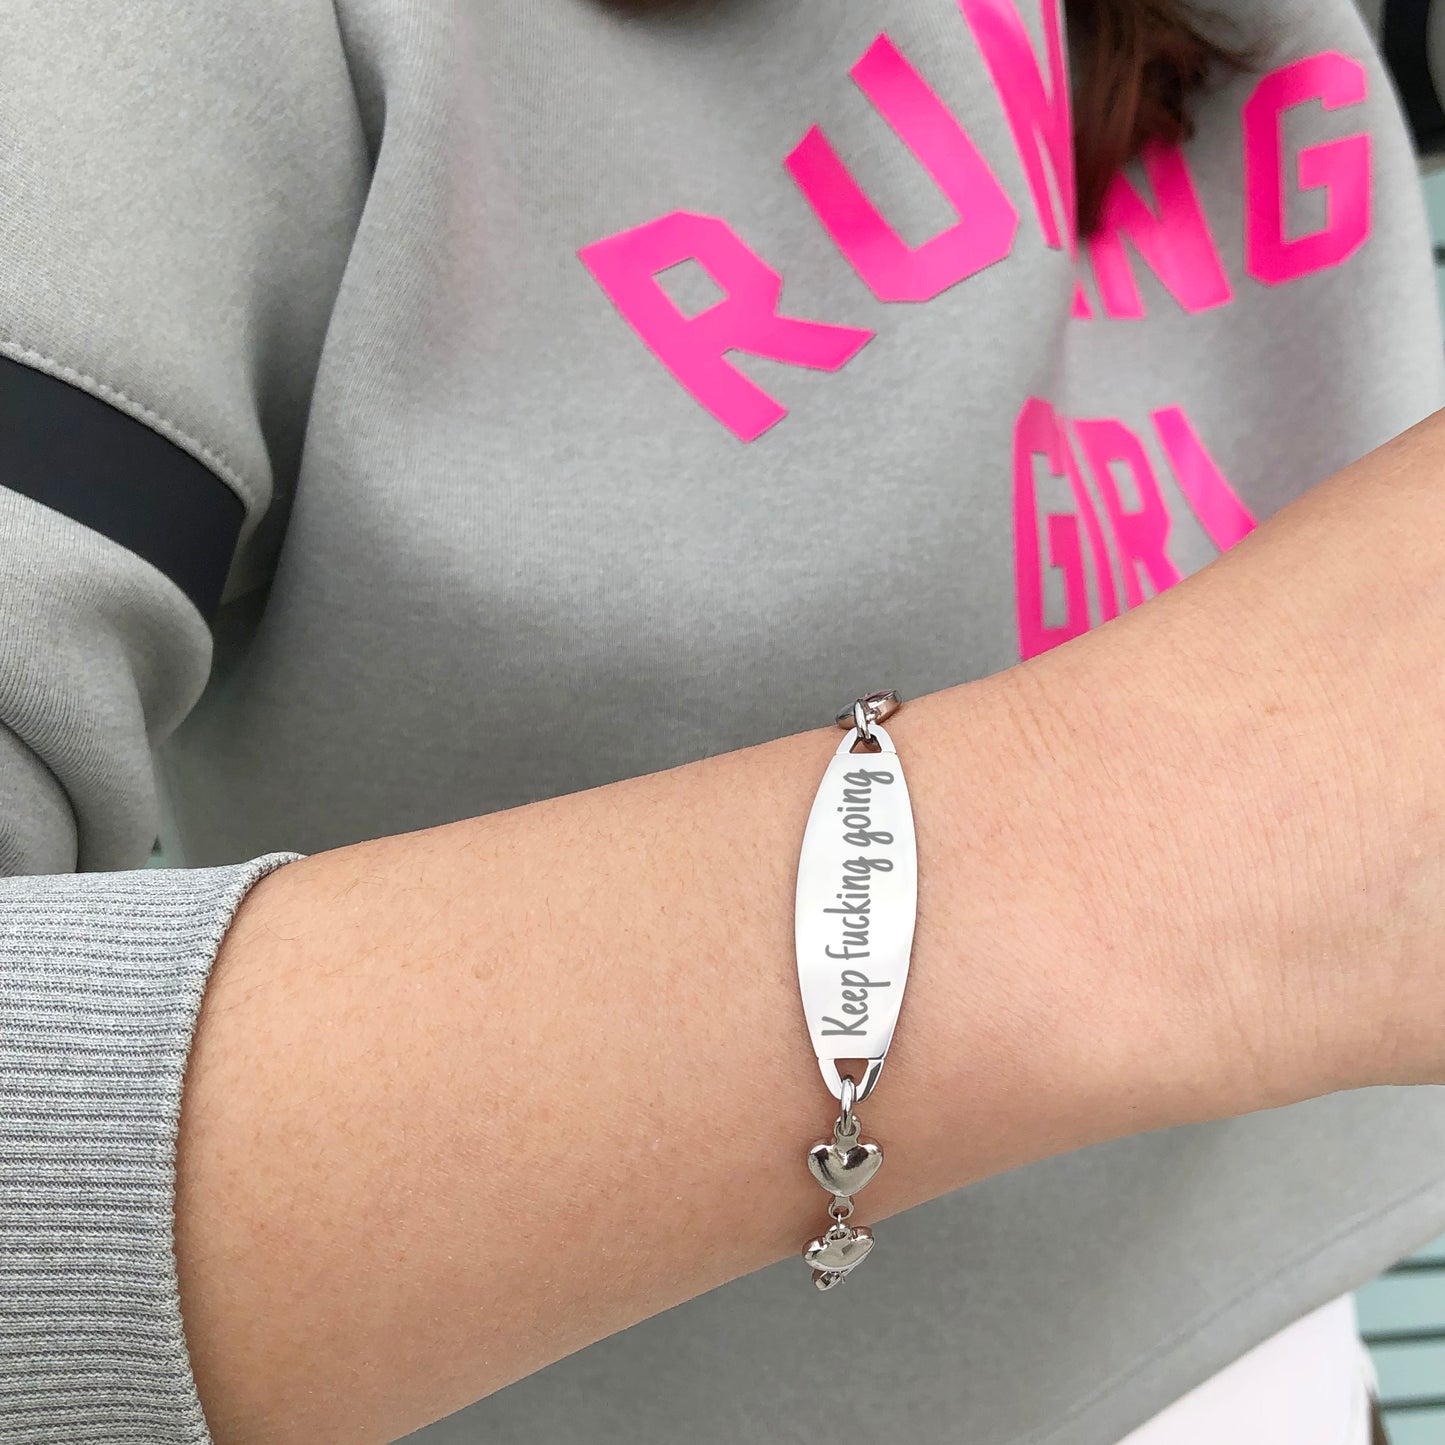 Inspirational Bracelet -Keep f*cking going- Fashion Heart Friendship Bracelets Festival Gift for Women